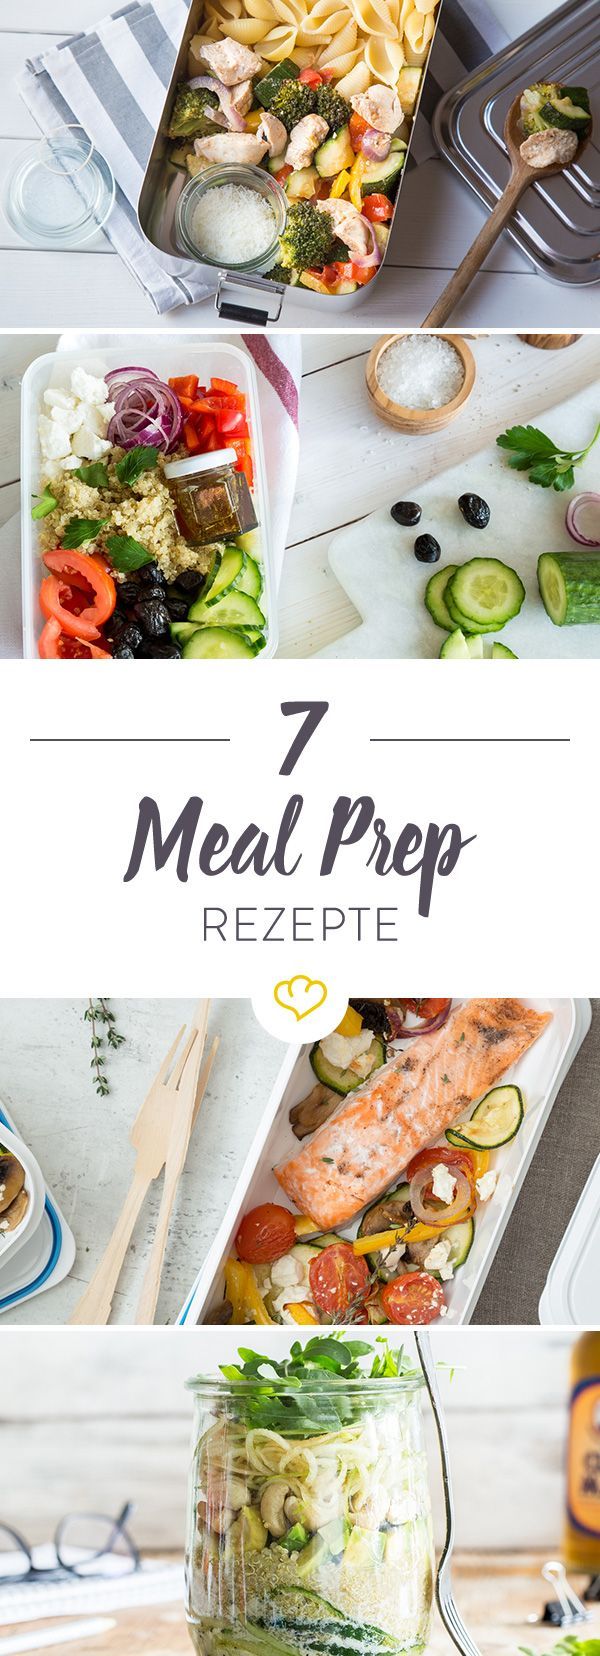 Vorkochen und Mitnehmen: 7 Meal-Prep-Rezepte -   25 fitness food rezepte
 ideas